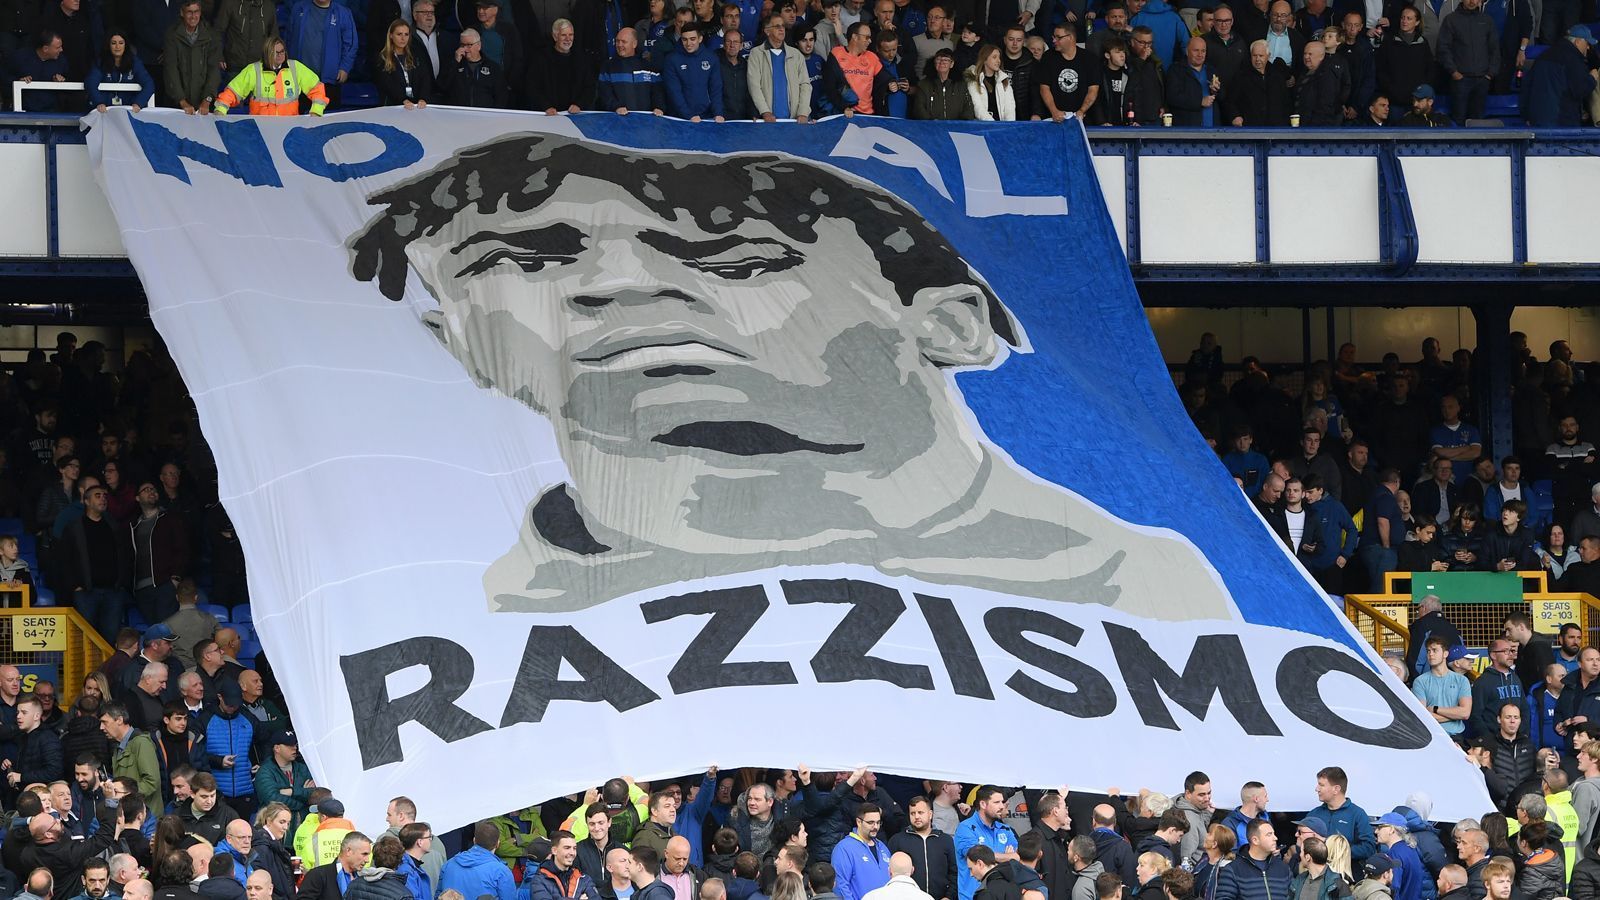 
                <strong>"No Al Razzismo": Starkes Zeichen der Everton-Fans gegen Rassismus</strong><br>
                Die Fans des englischen Premier-League-Klubs Everton setzten im Heimspiel gegen Manchester City ein starkes Zeichen gegen Rassismus. Die Anhänger der "Toffees" enthüllten ein riesiges Banner mit der Aufschrift "No Al Razzismo" (italienisch für: "Nein zum Rassismus"). Diese Aktion war vor allem dem Sommer-Neuzugang Moise Kean gewidmet, dessen Konterfei auf dem Banner zu sehen war. Hintergrund: Der junge Italiener mit ivorischen Wurzeln wurde bei seinem Ex-Klub Juventus Turin in der Vergangenheit selbst bereits zum Opfer von Rassismus im Stadion. "Das Banner ist schön, weil Rassismus fürchterlich ist und wir gegen Rassisten kämpfen müssen", sagte Kean nach Spielschluss sichtlich gerührt.
              